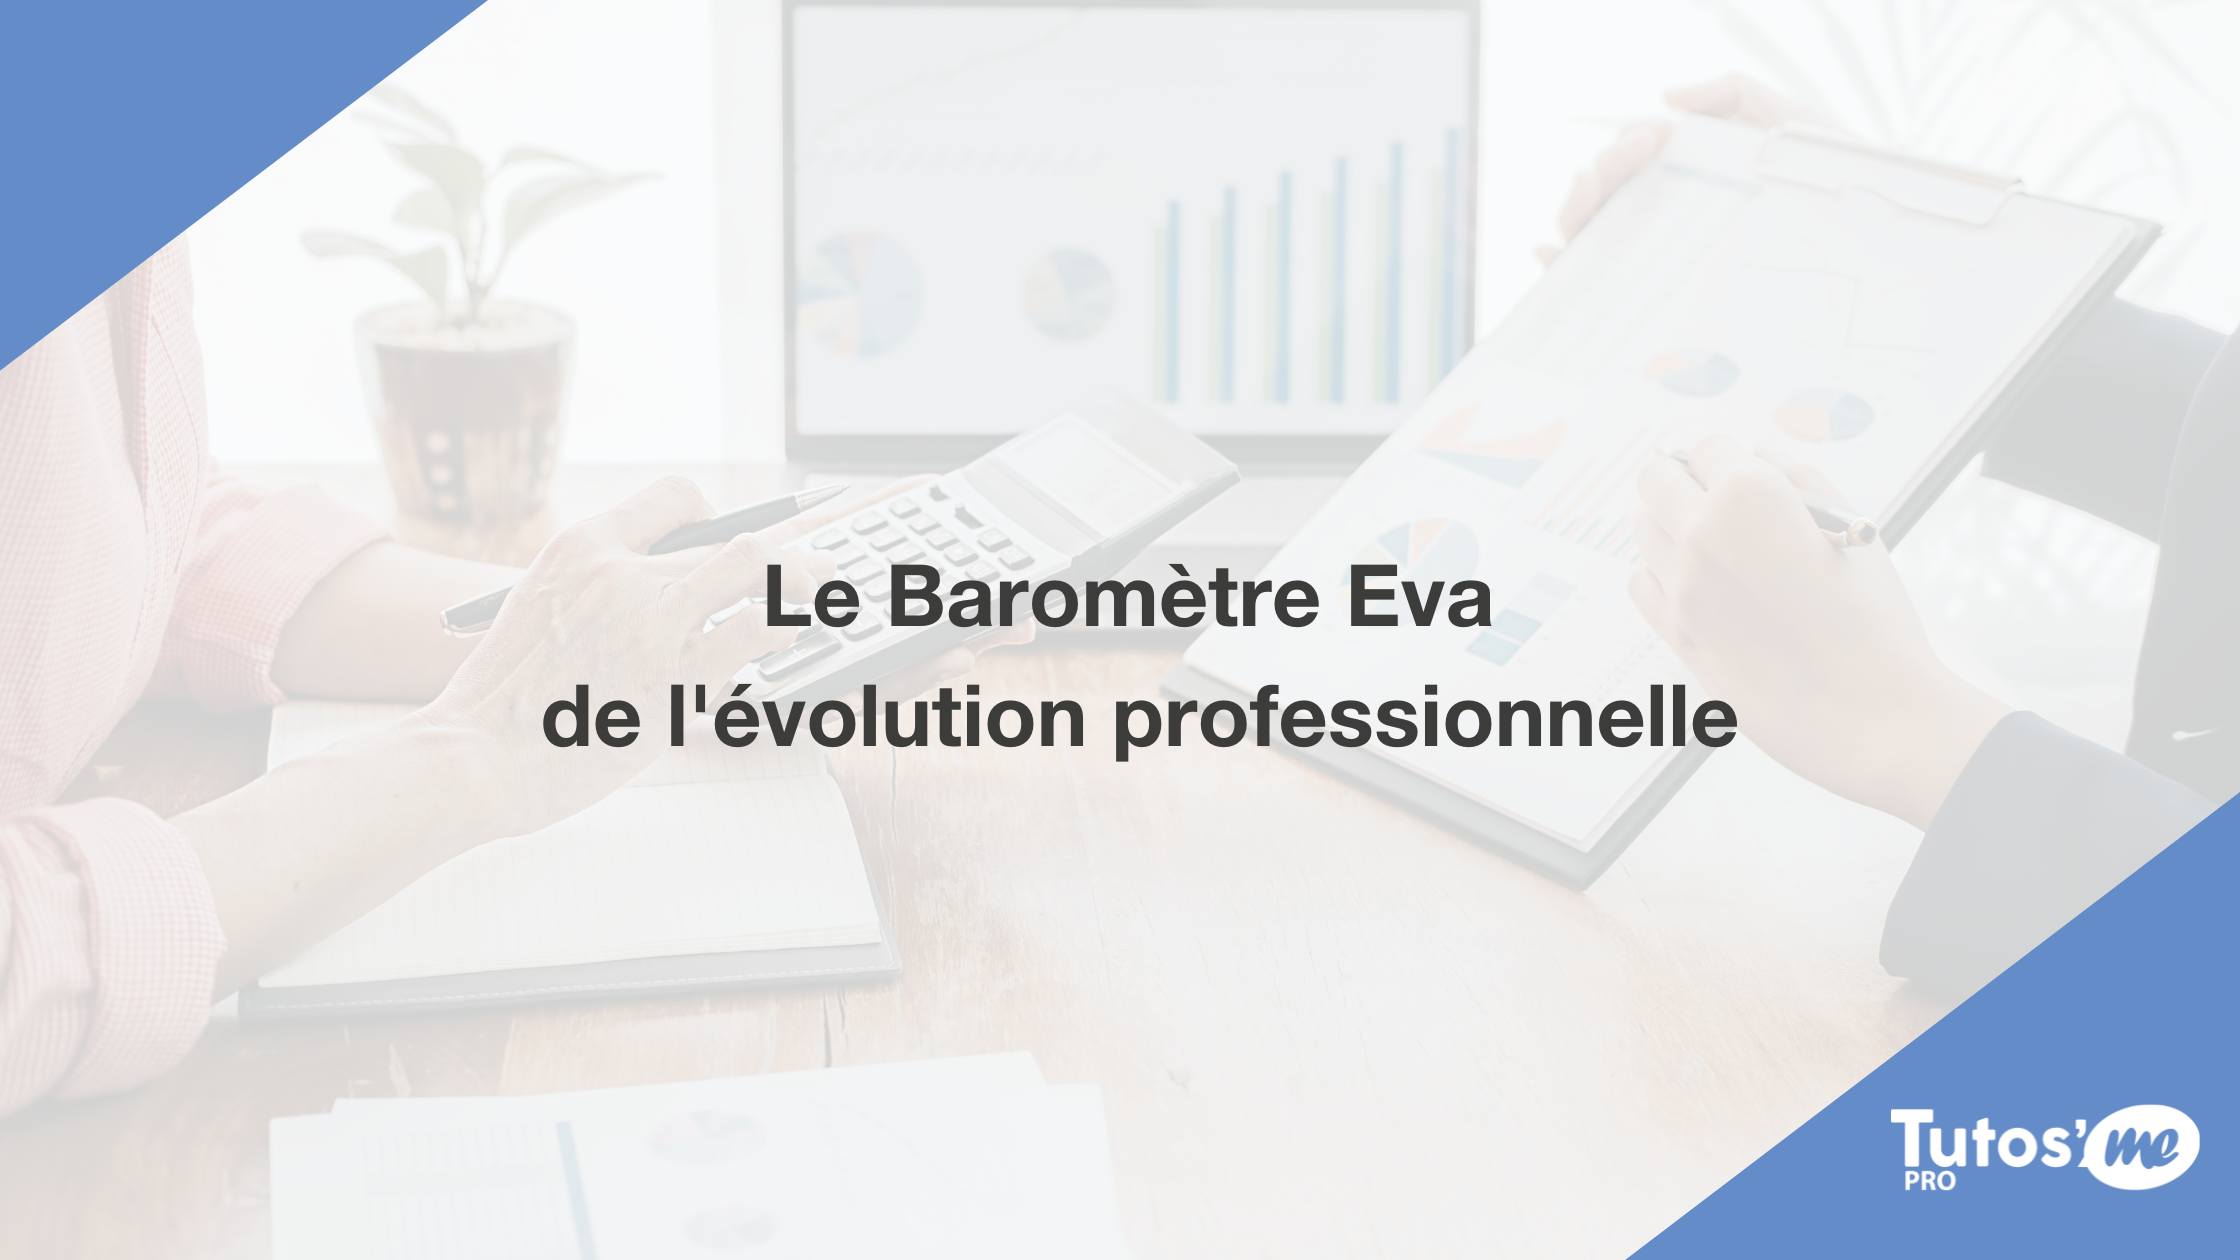 Le Baromètre Eva de l'évolution professionnelle